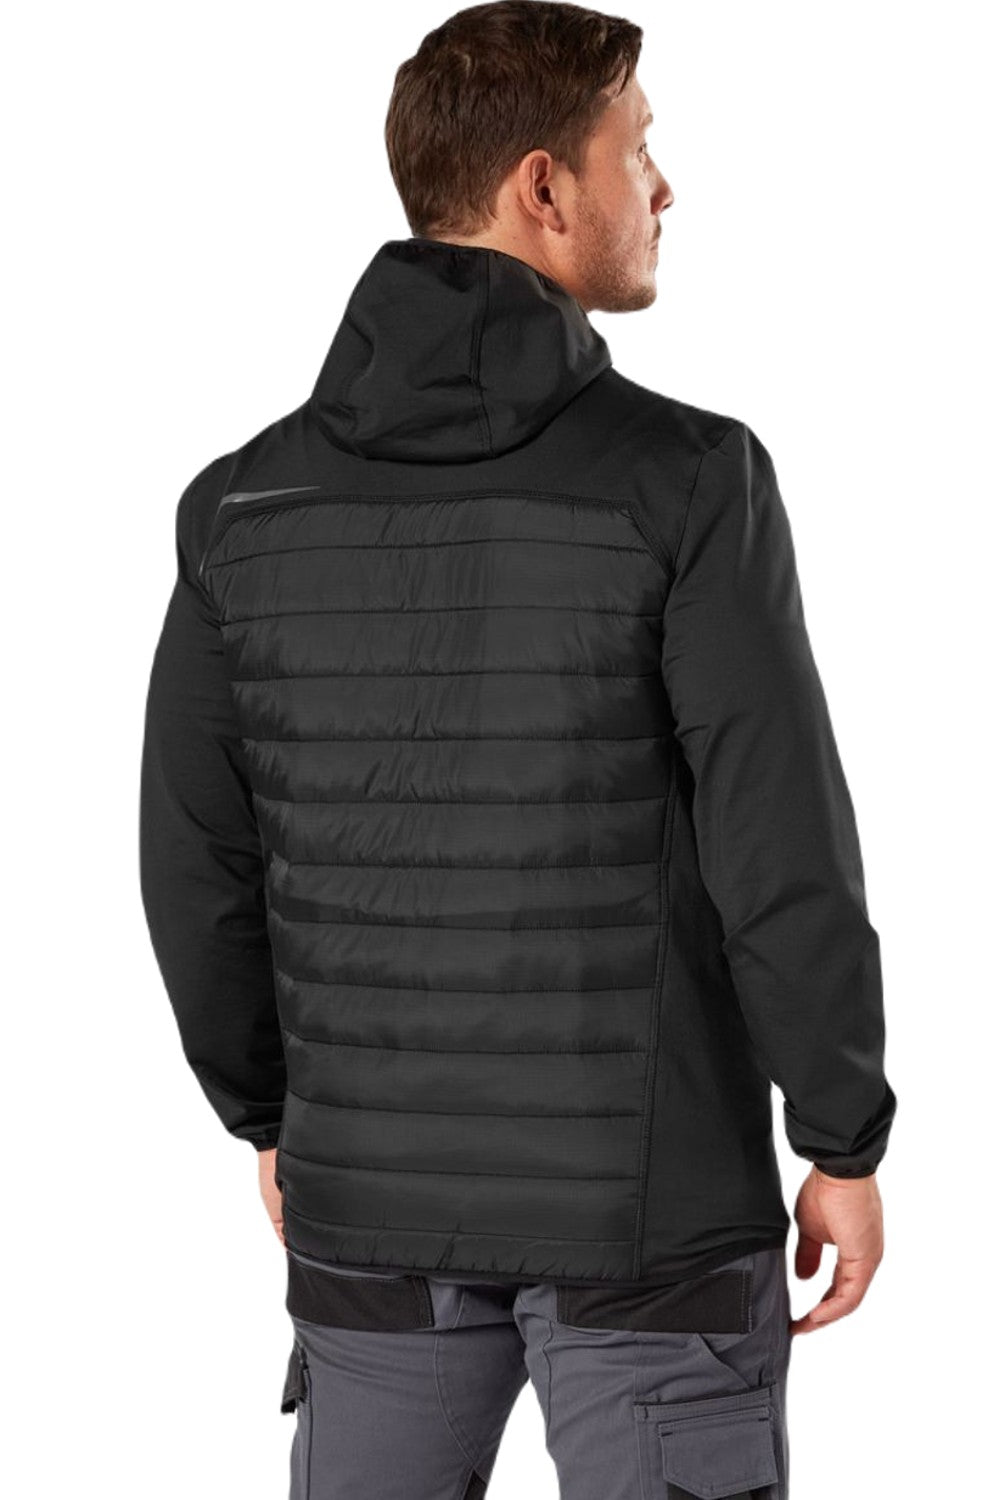 Dickies Generation Waterproof Hybrid Jacket in Black